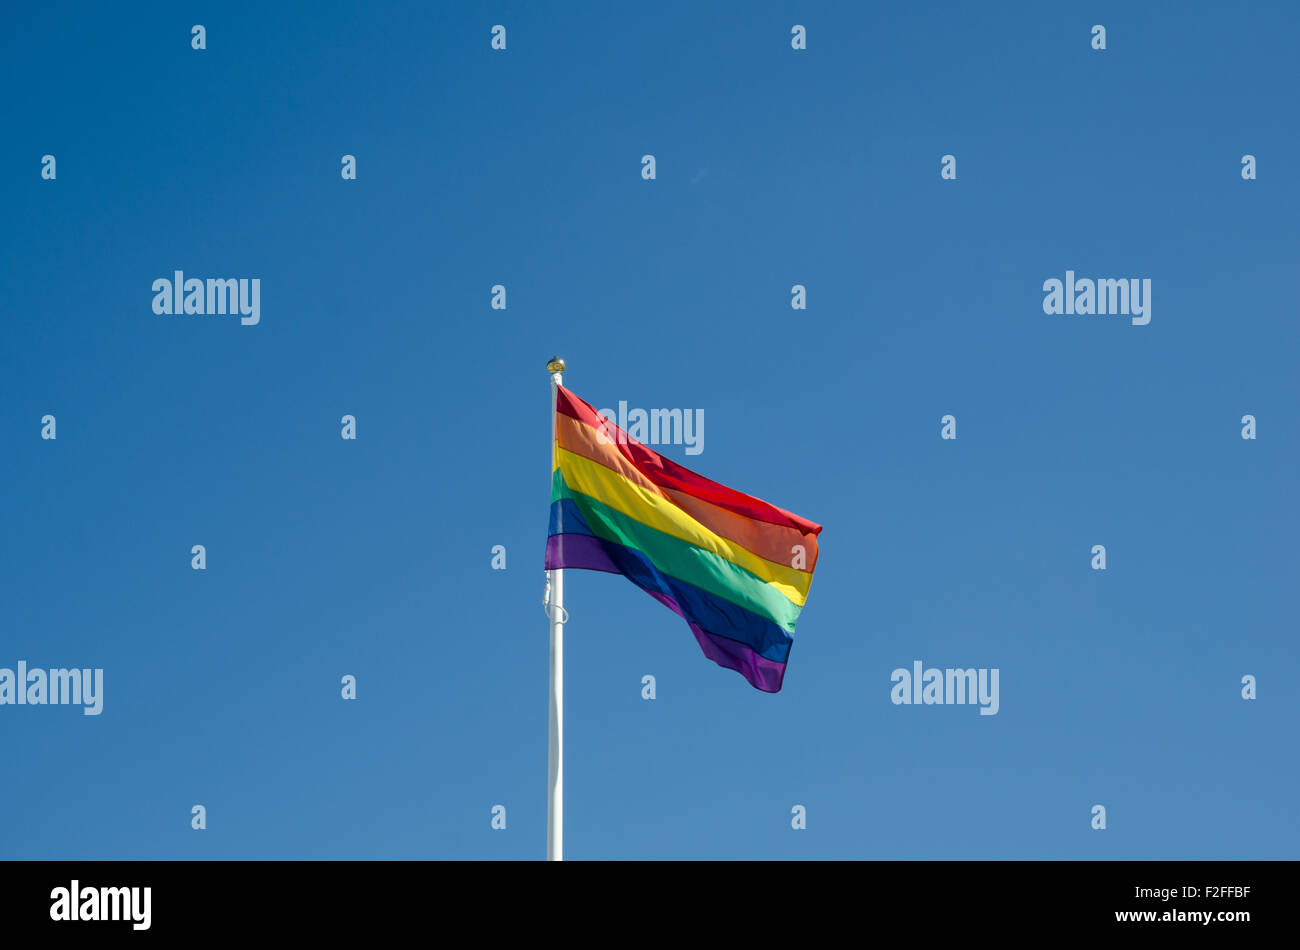 Waving rainbow flag at a clear blue sky Stock Photo